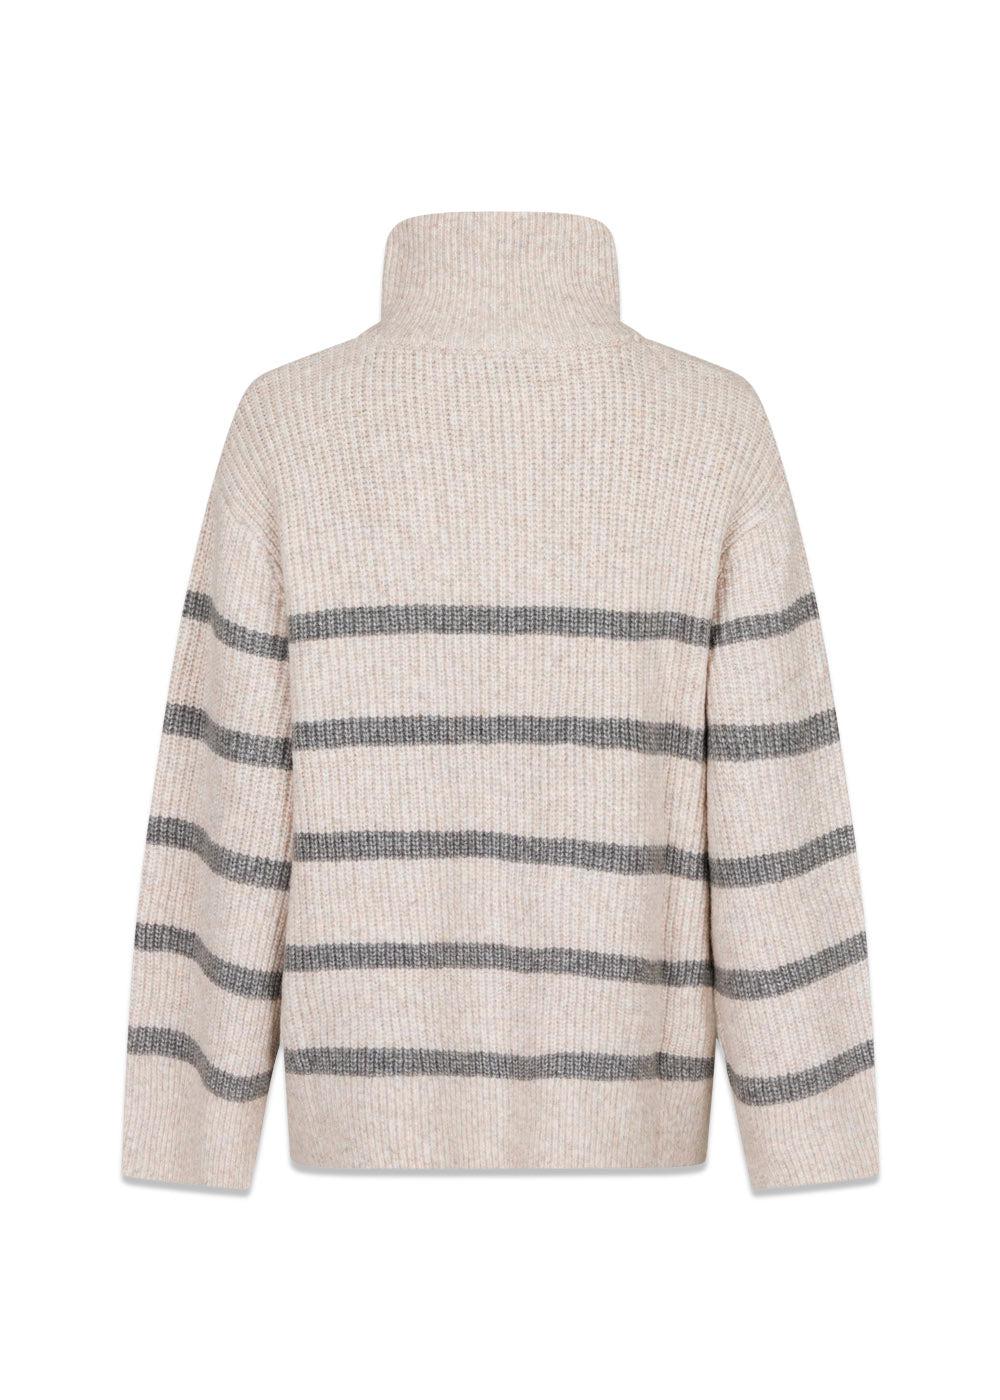 Nevena Stripe Knit Blouse - Sand/Grey